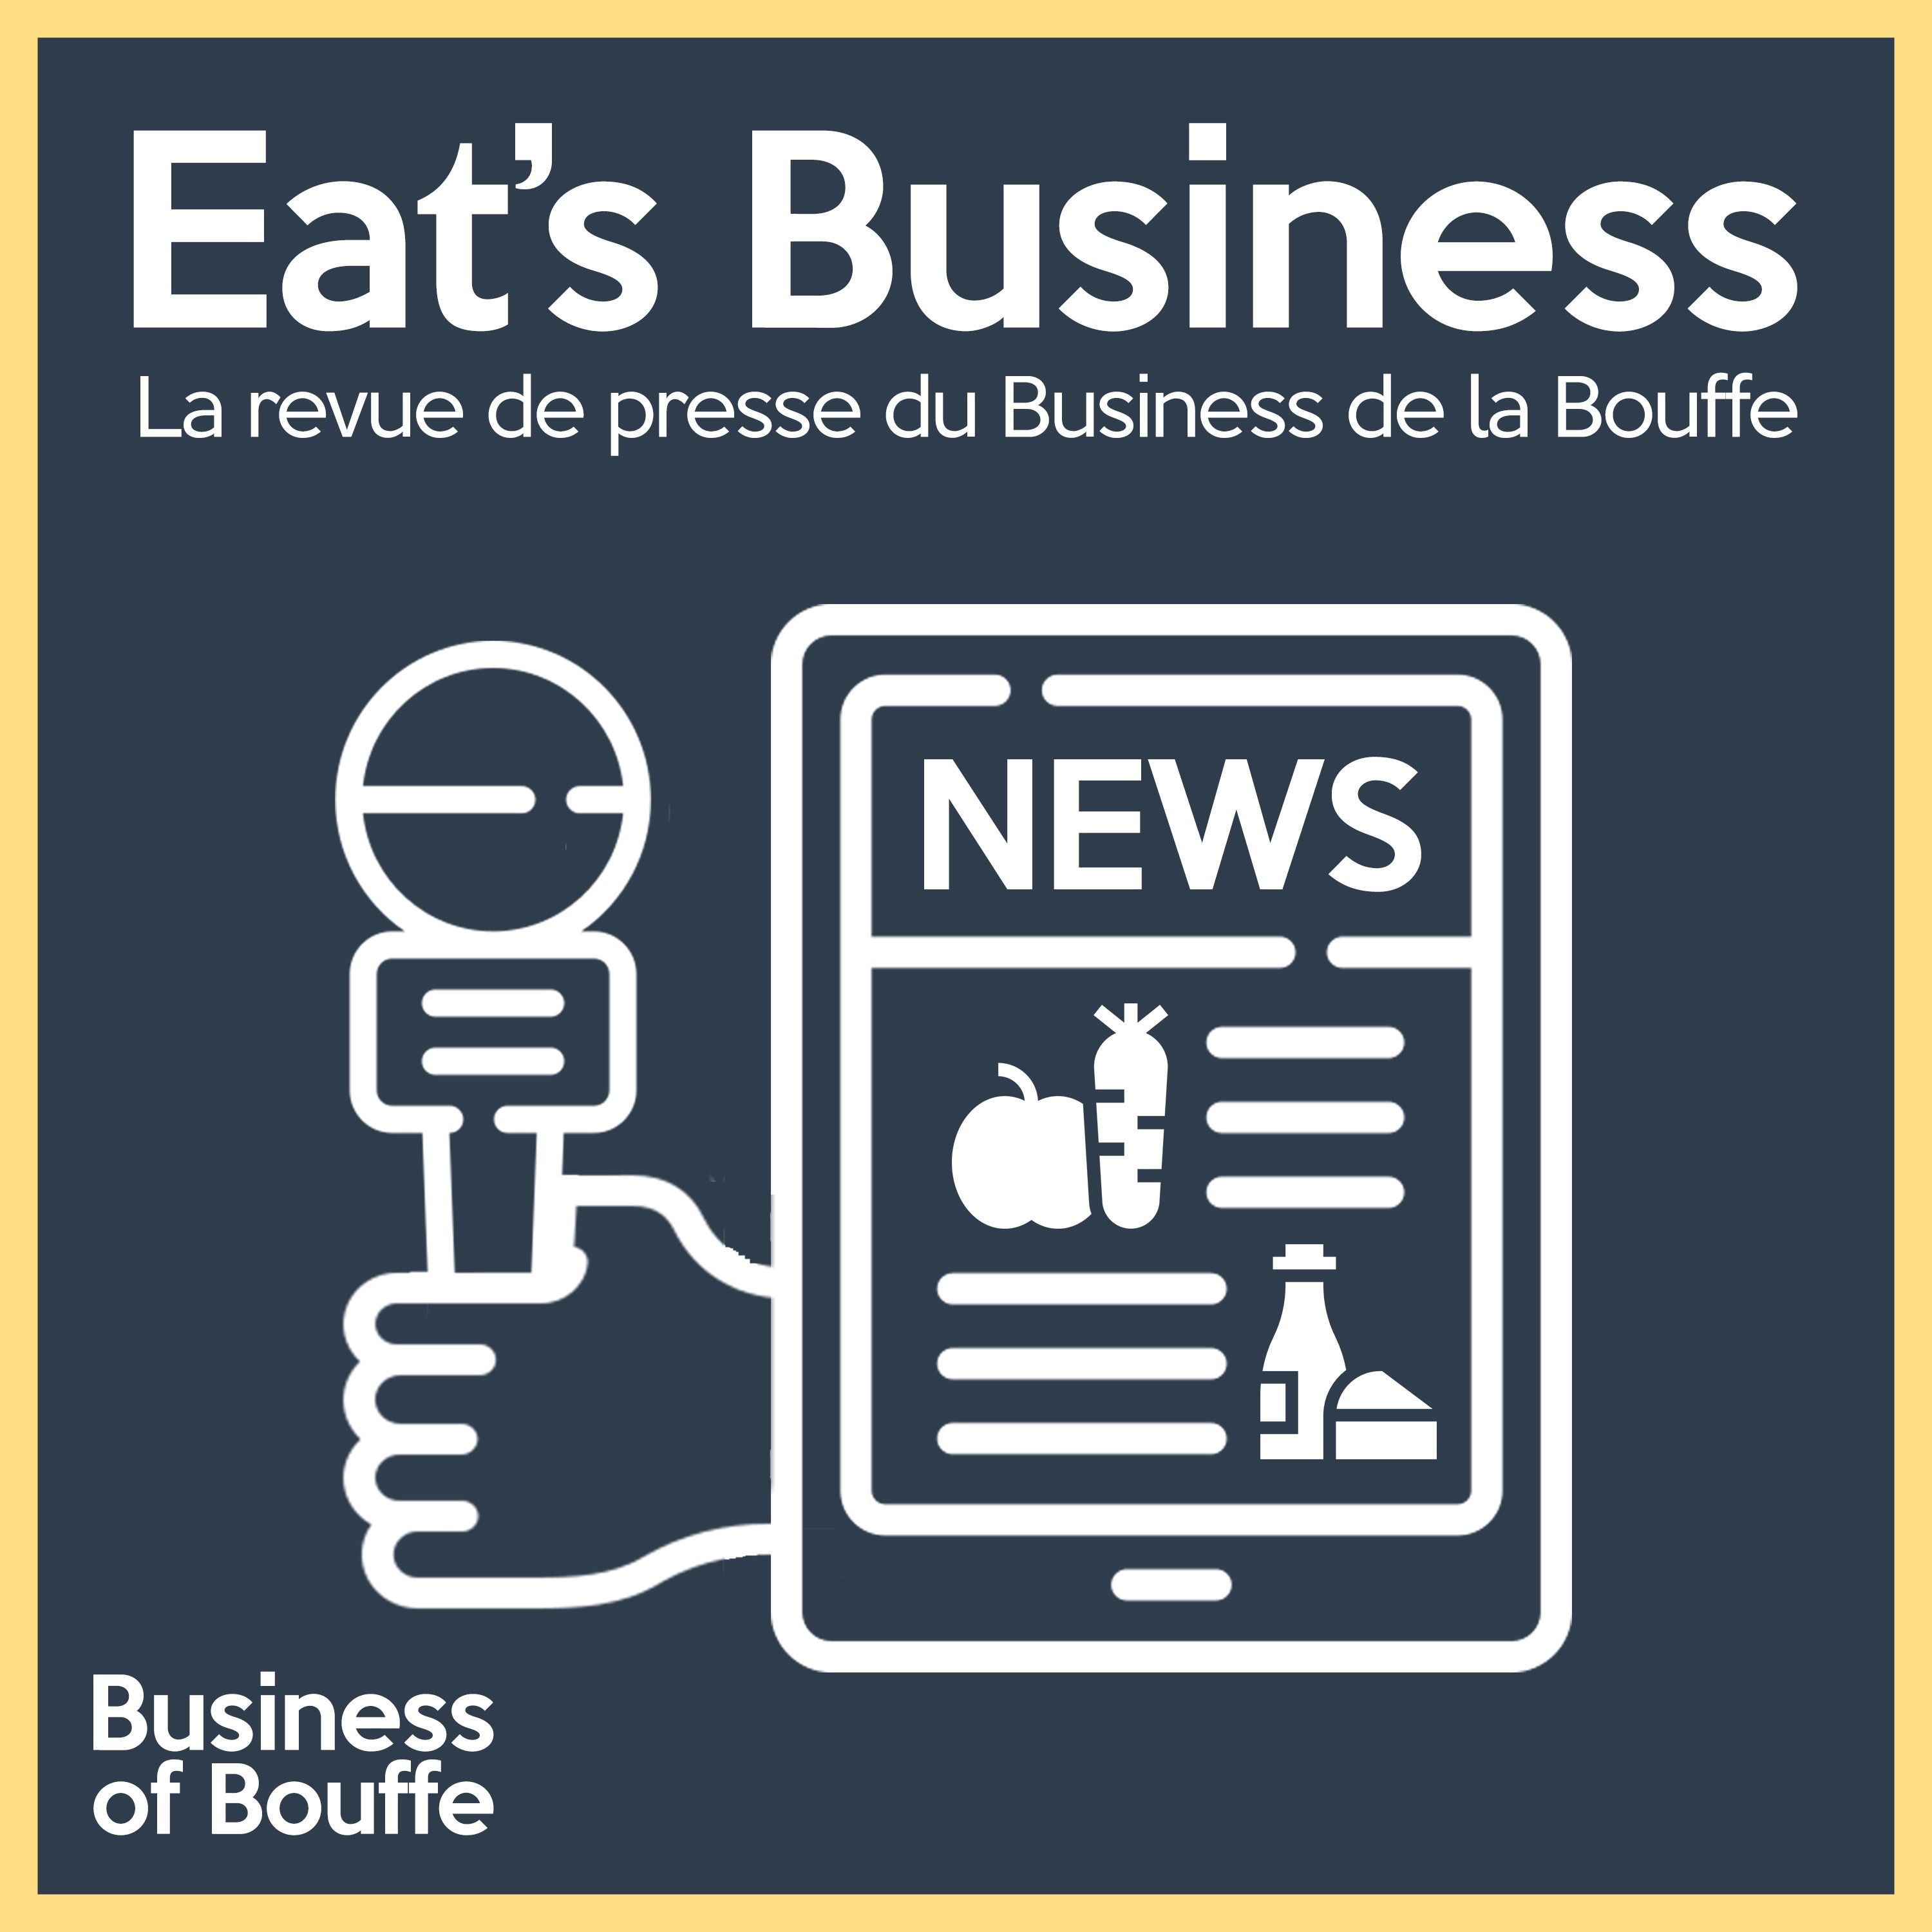 Eat’s Business #60 | Eat’s Business évolue, la canette tient sa revanche et compteur de calories intégré